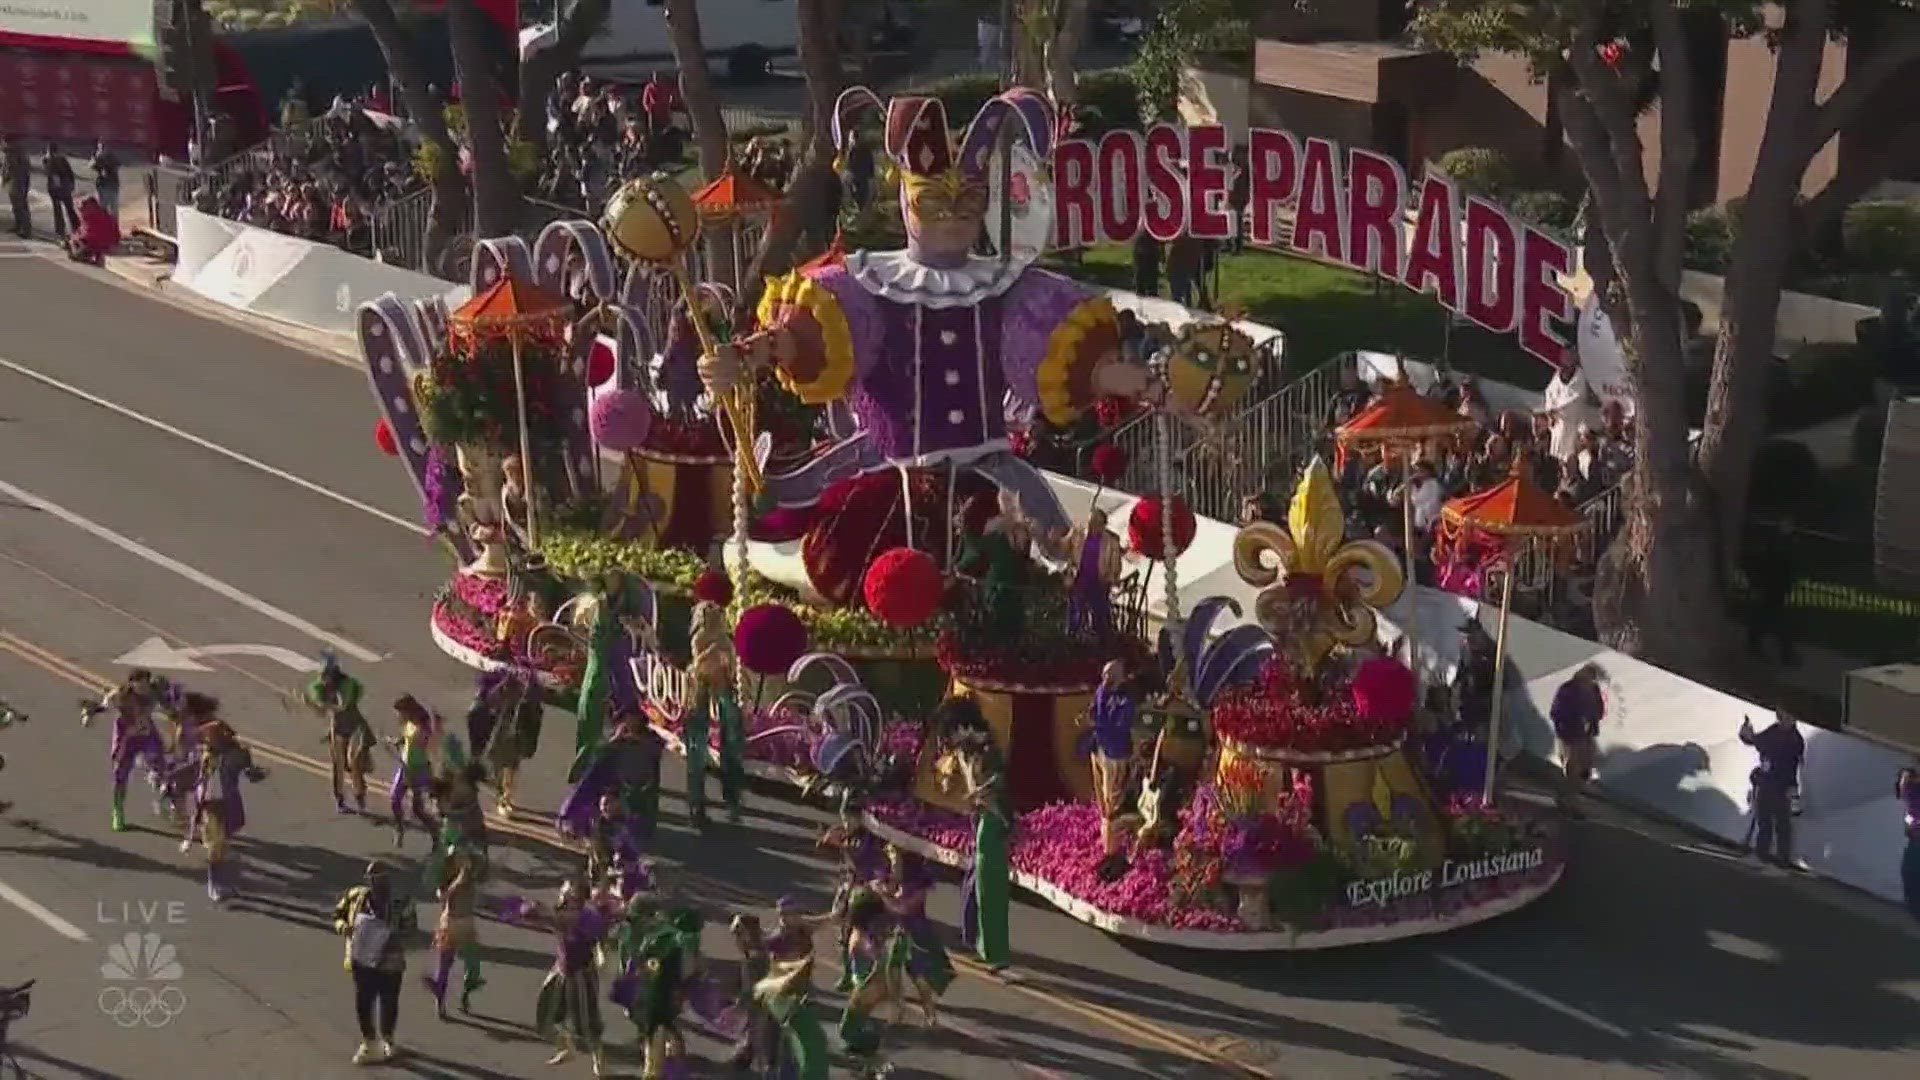 Louisiana's Rose Parade float.